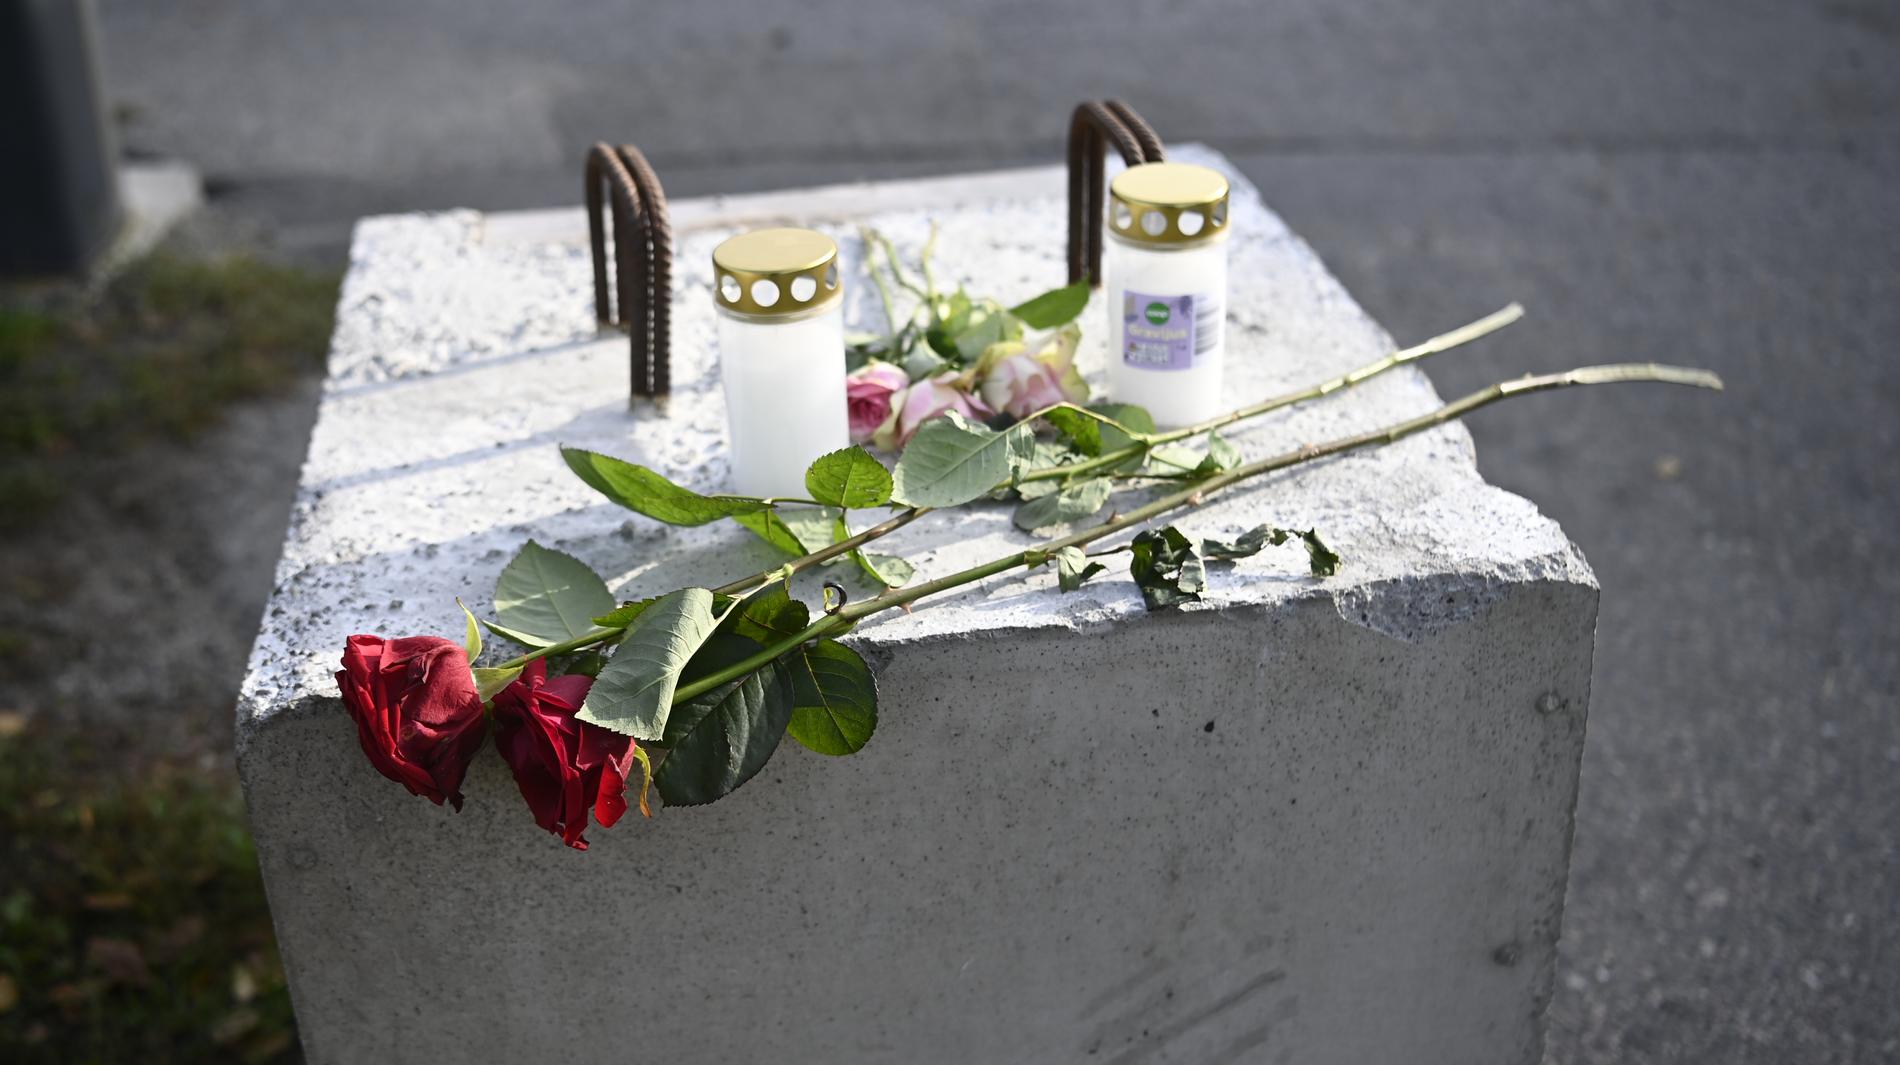 Blommor och ljus framställda för att minnas den döde rapparen.